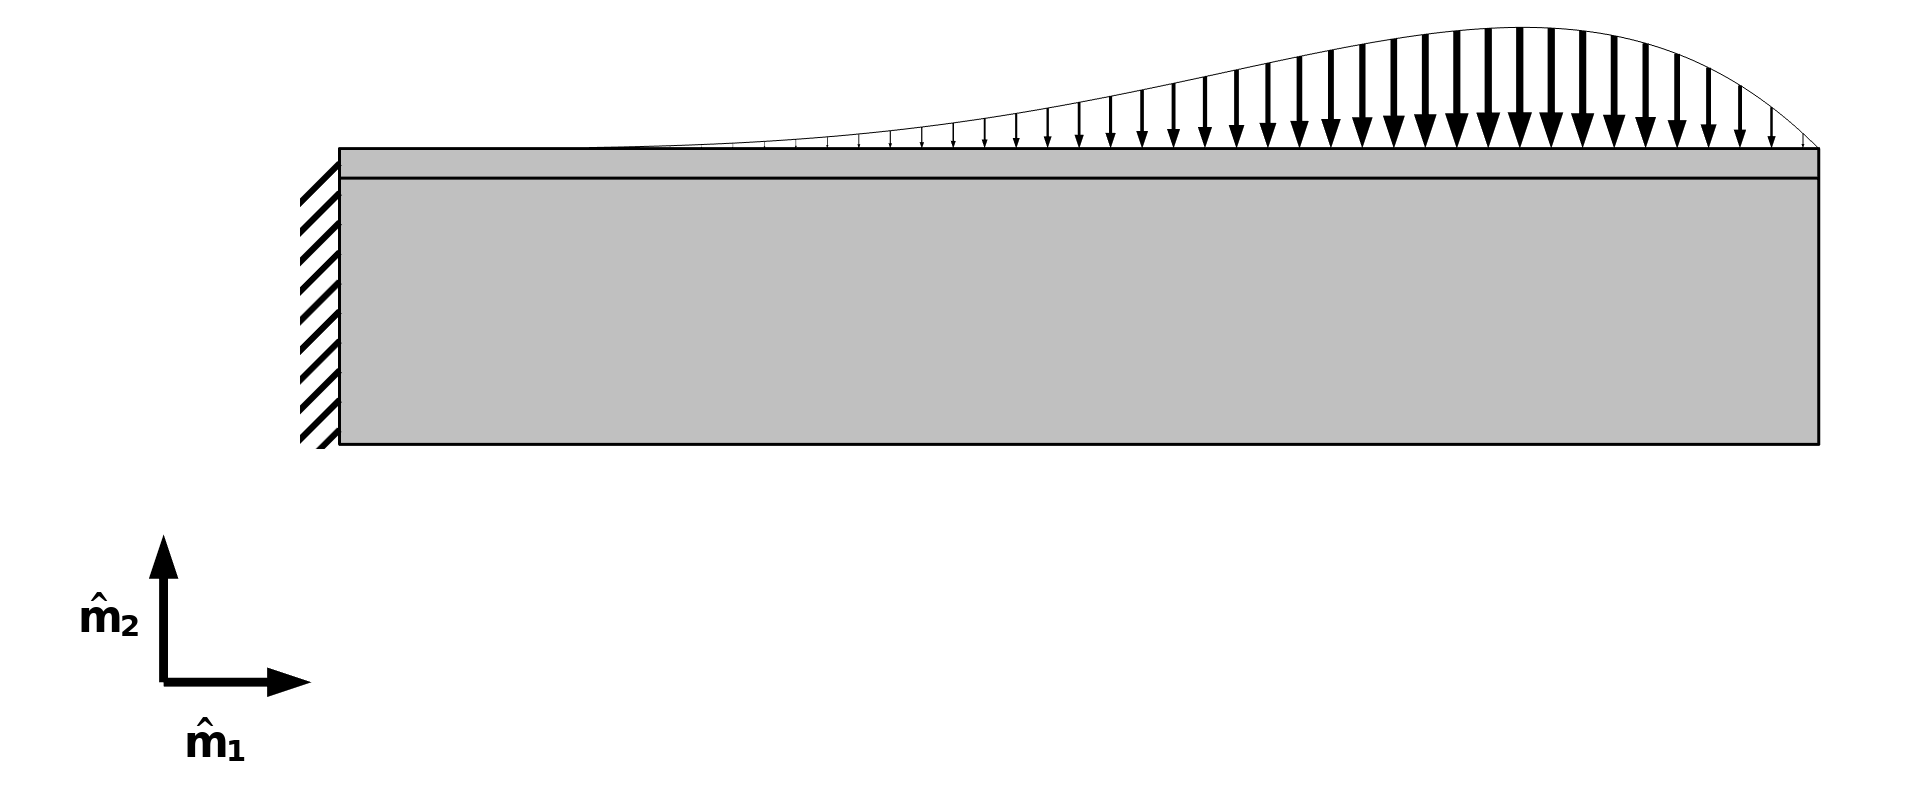 Модель алюминиевой консольной балки, левый торец которой жёстко закреплён, а к верхней границе приложена распределённая нагрузка.